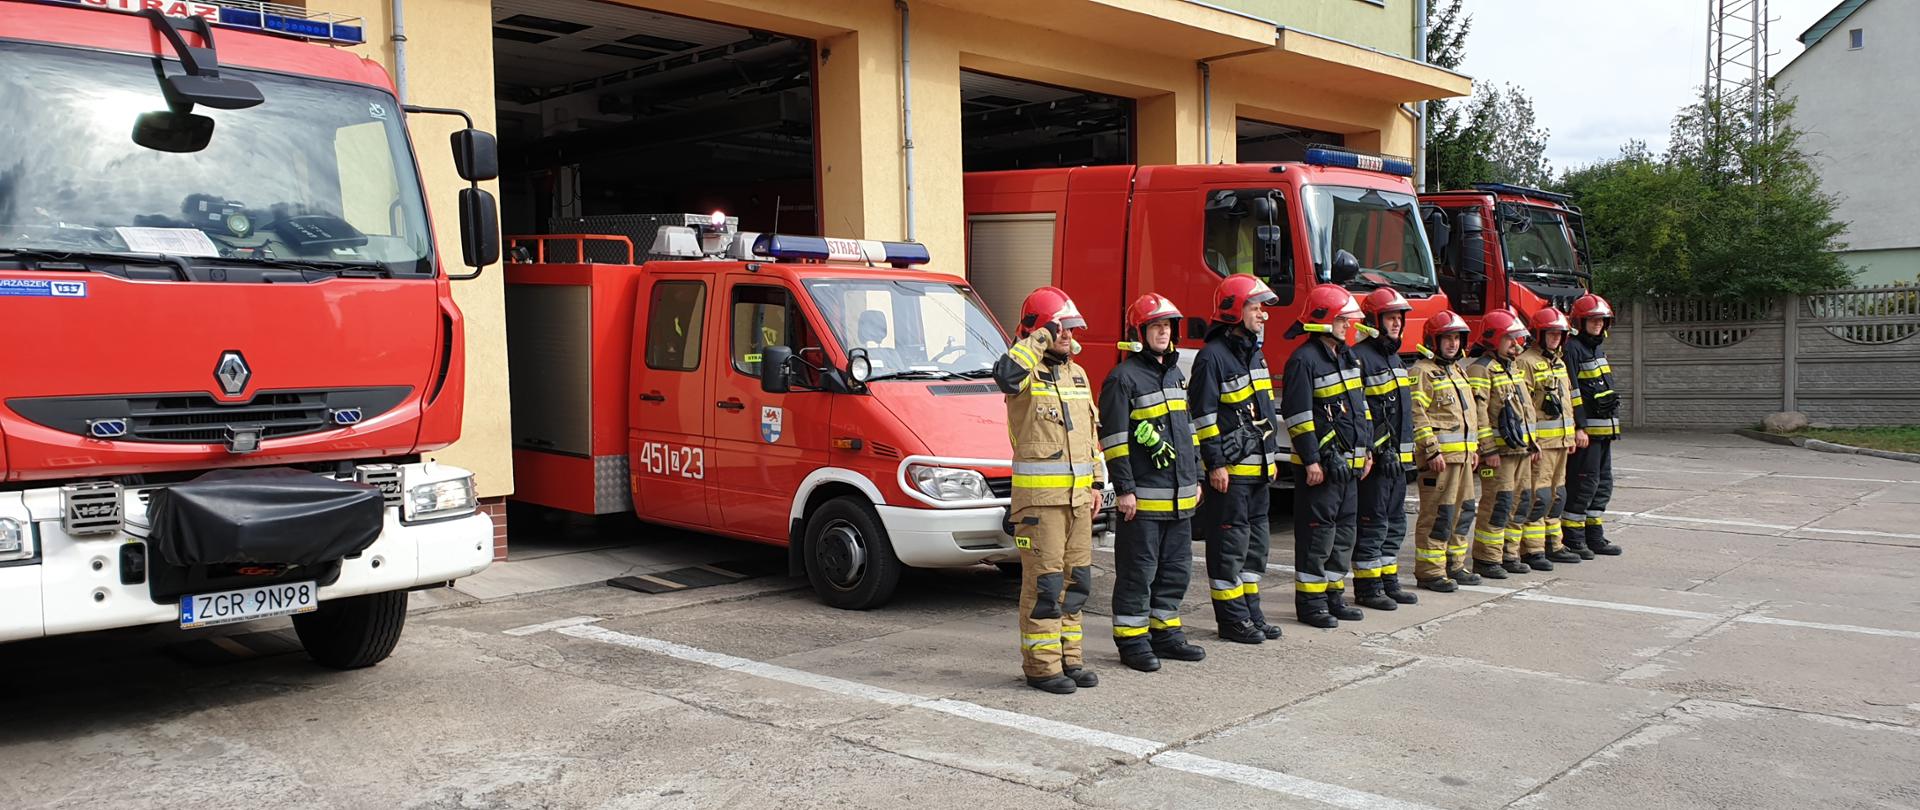 Zdjęcie przedstawia stojących w szeregu strażaków. Z tyłu za nimi cztery wozy strażackie.